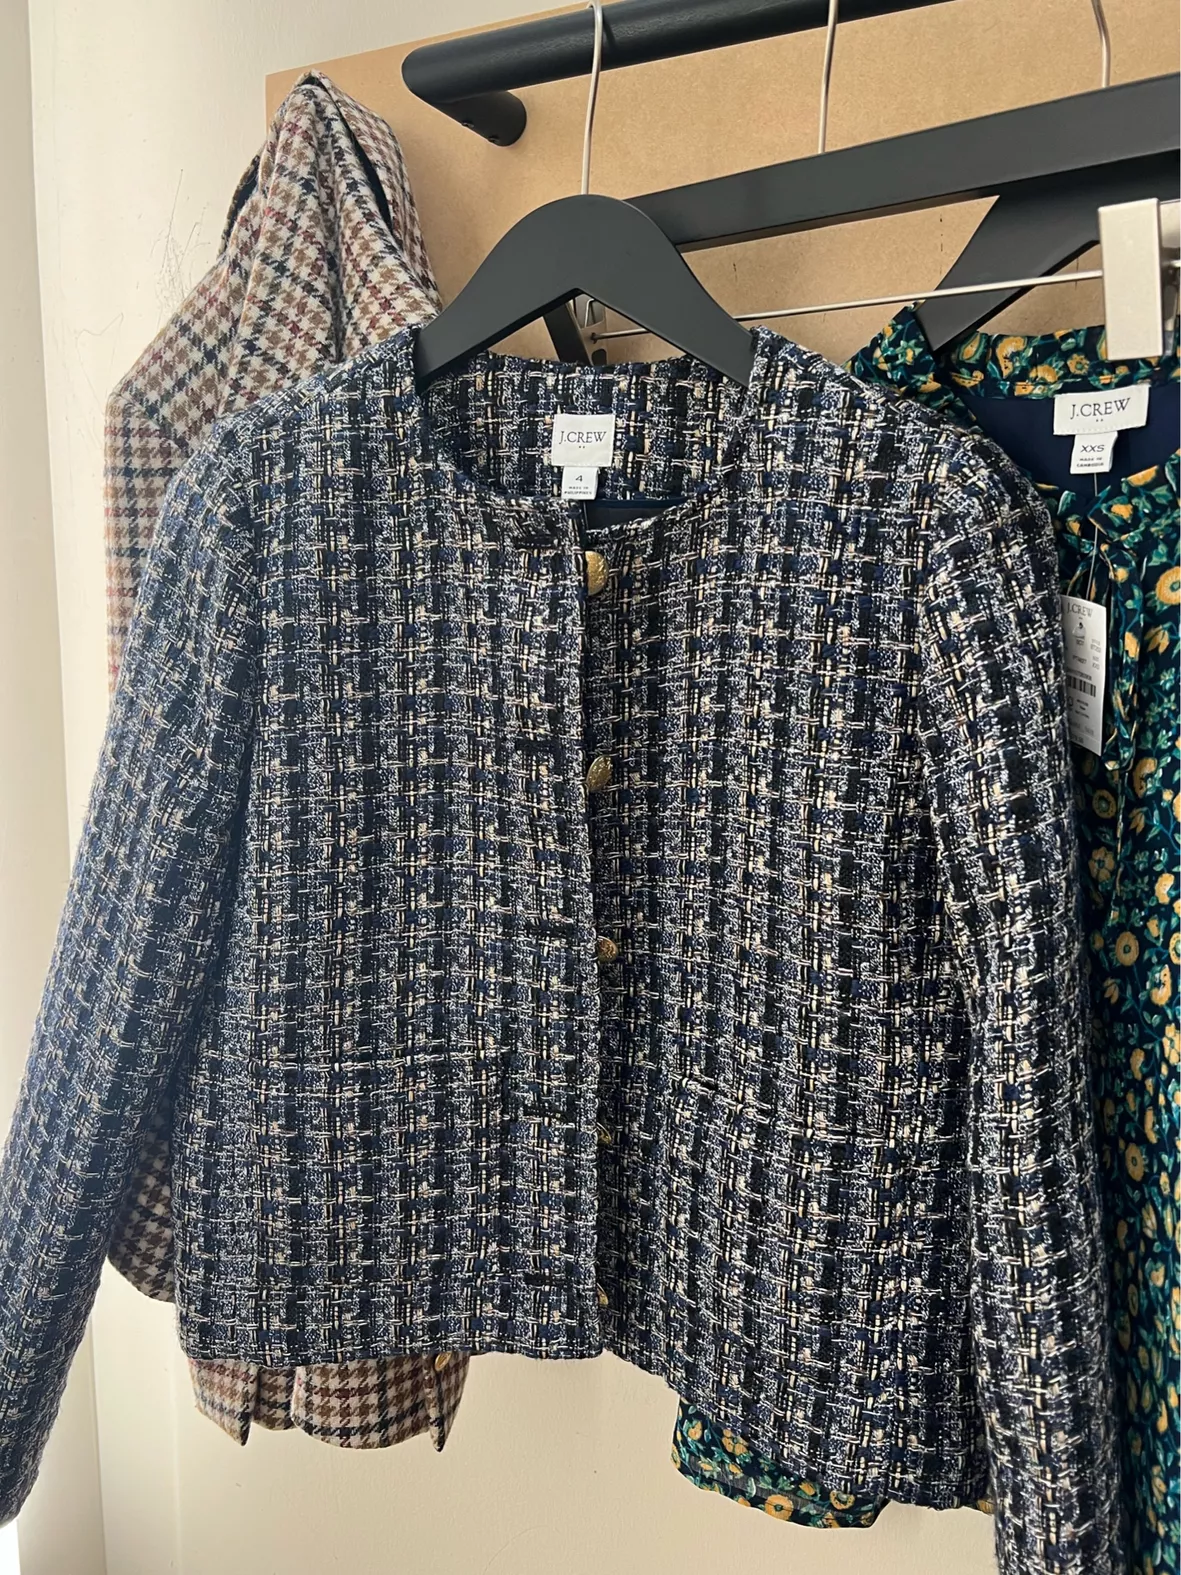 Petite Metallic Fringe Tweed Jacket curated on LTK